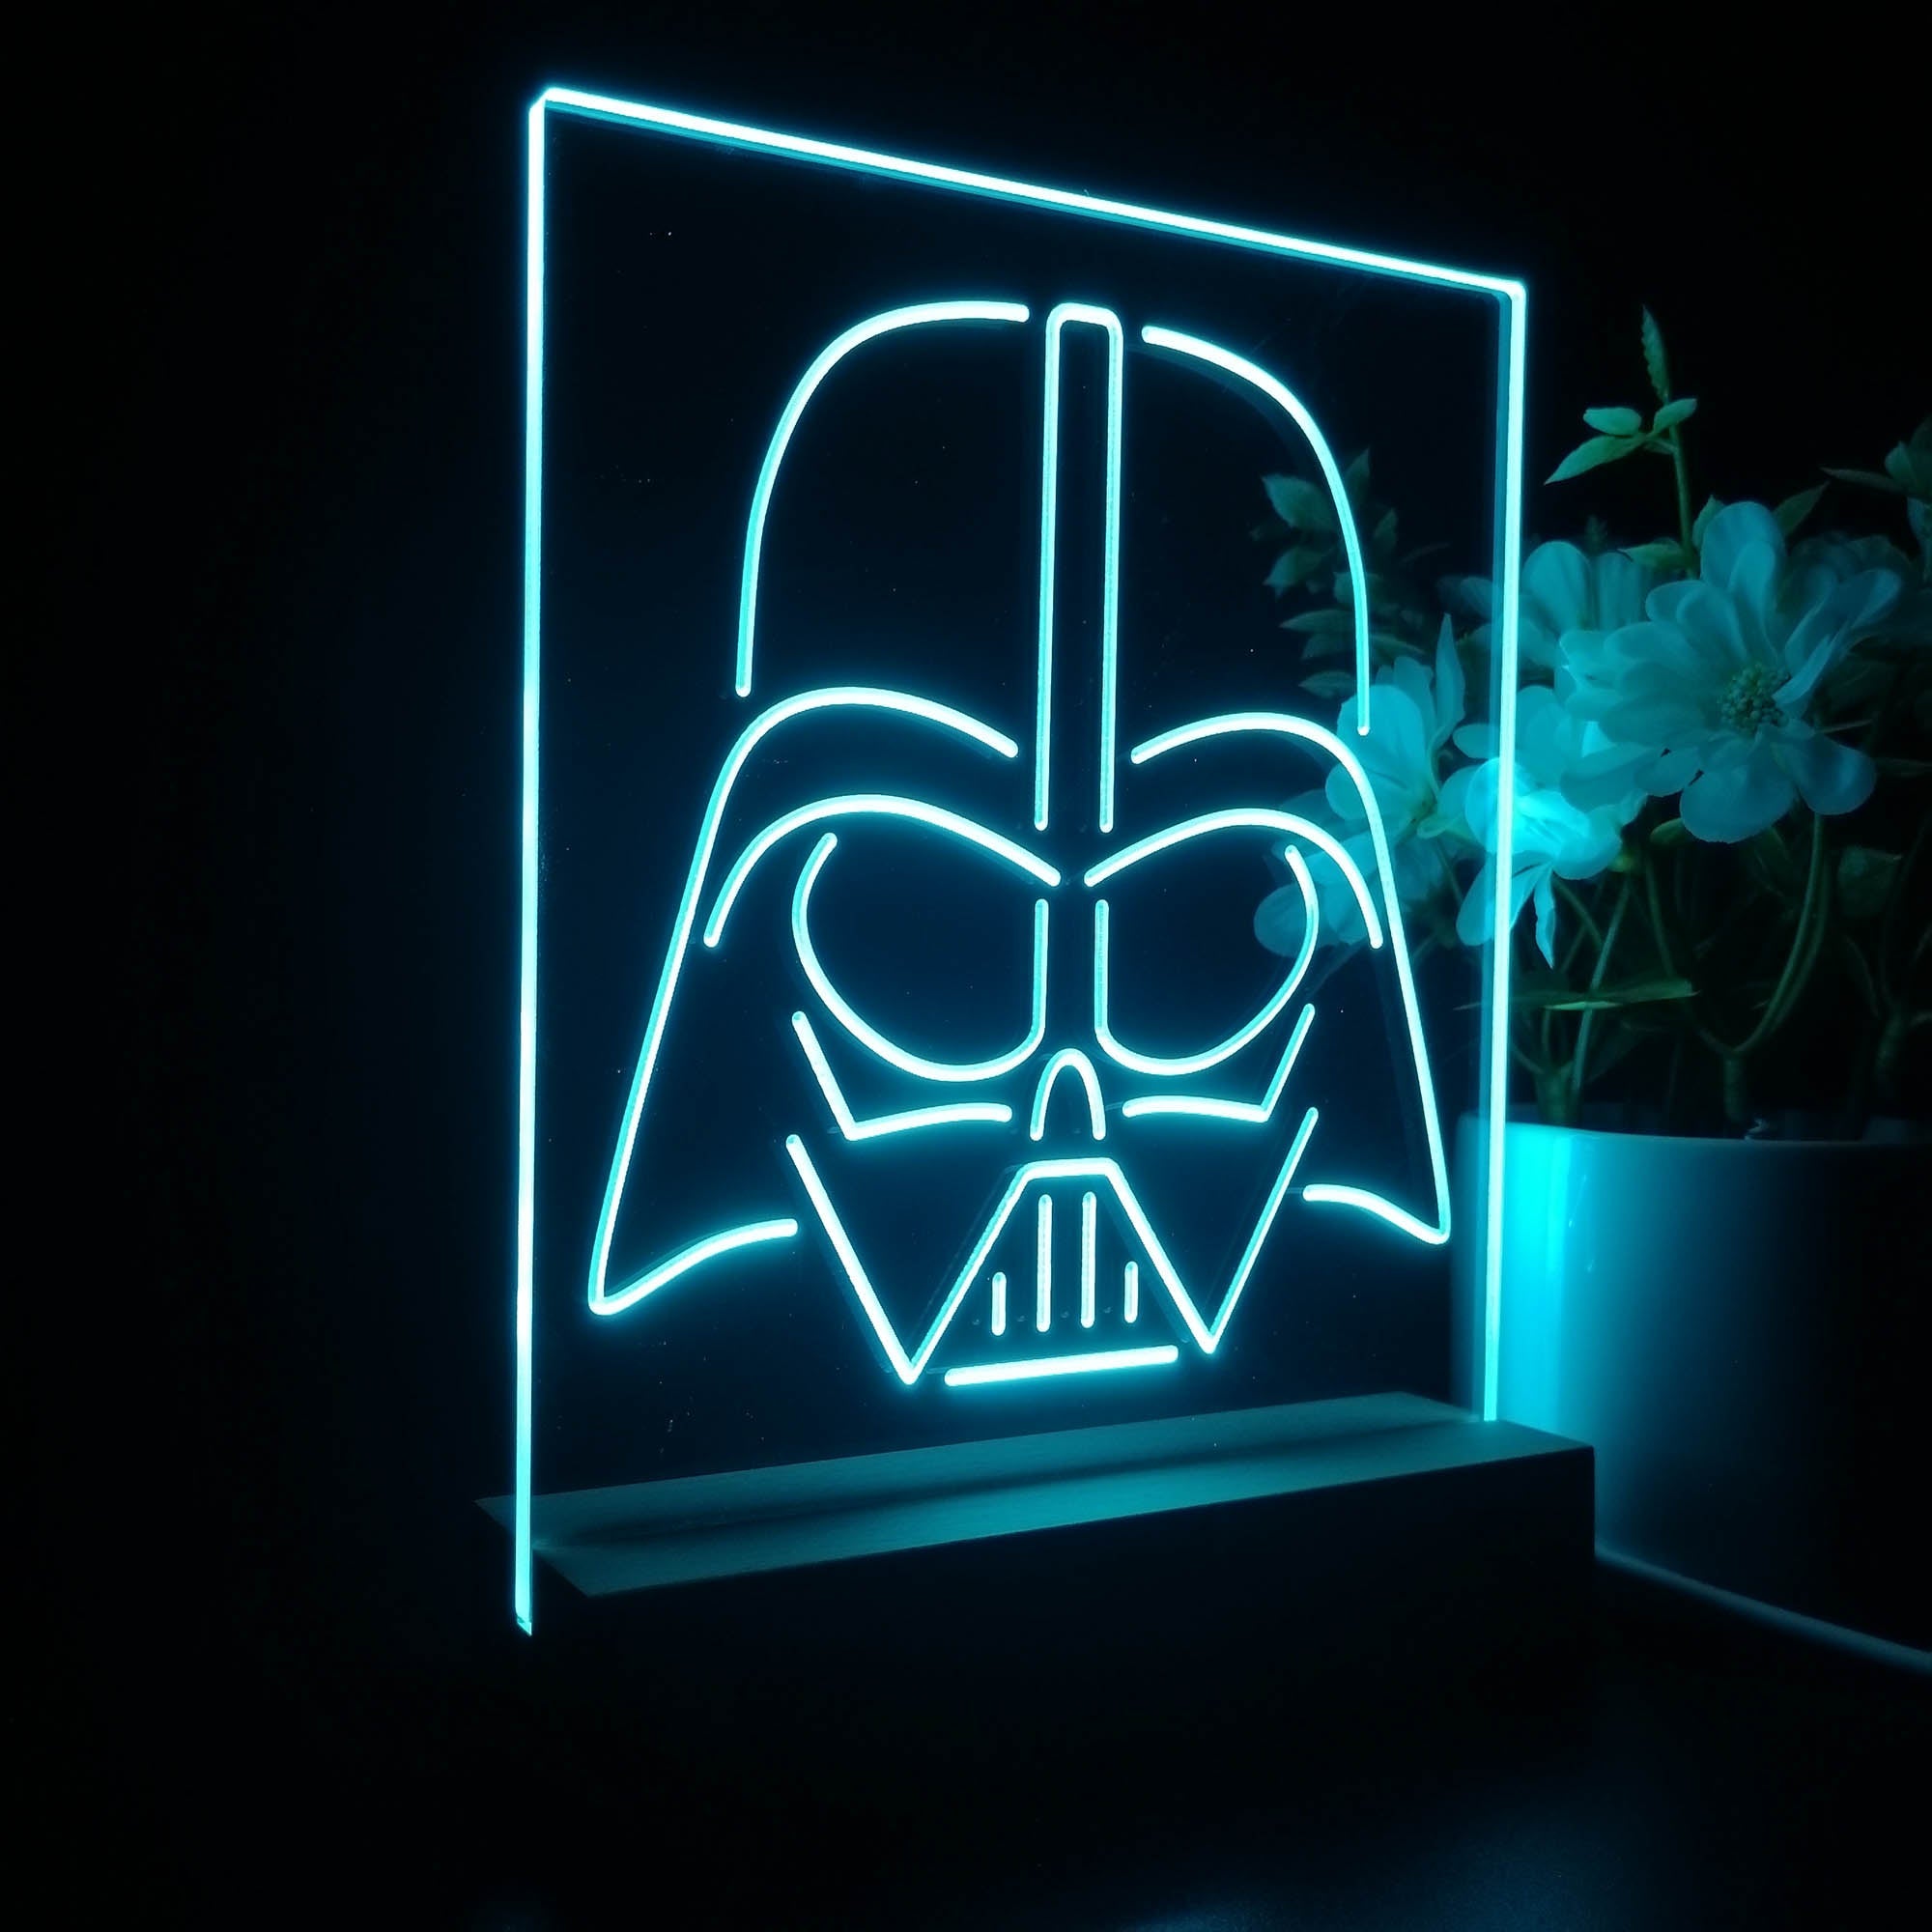 Star Wars Darth Vader 3D Illusion Night Light Desk Lamp